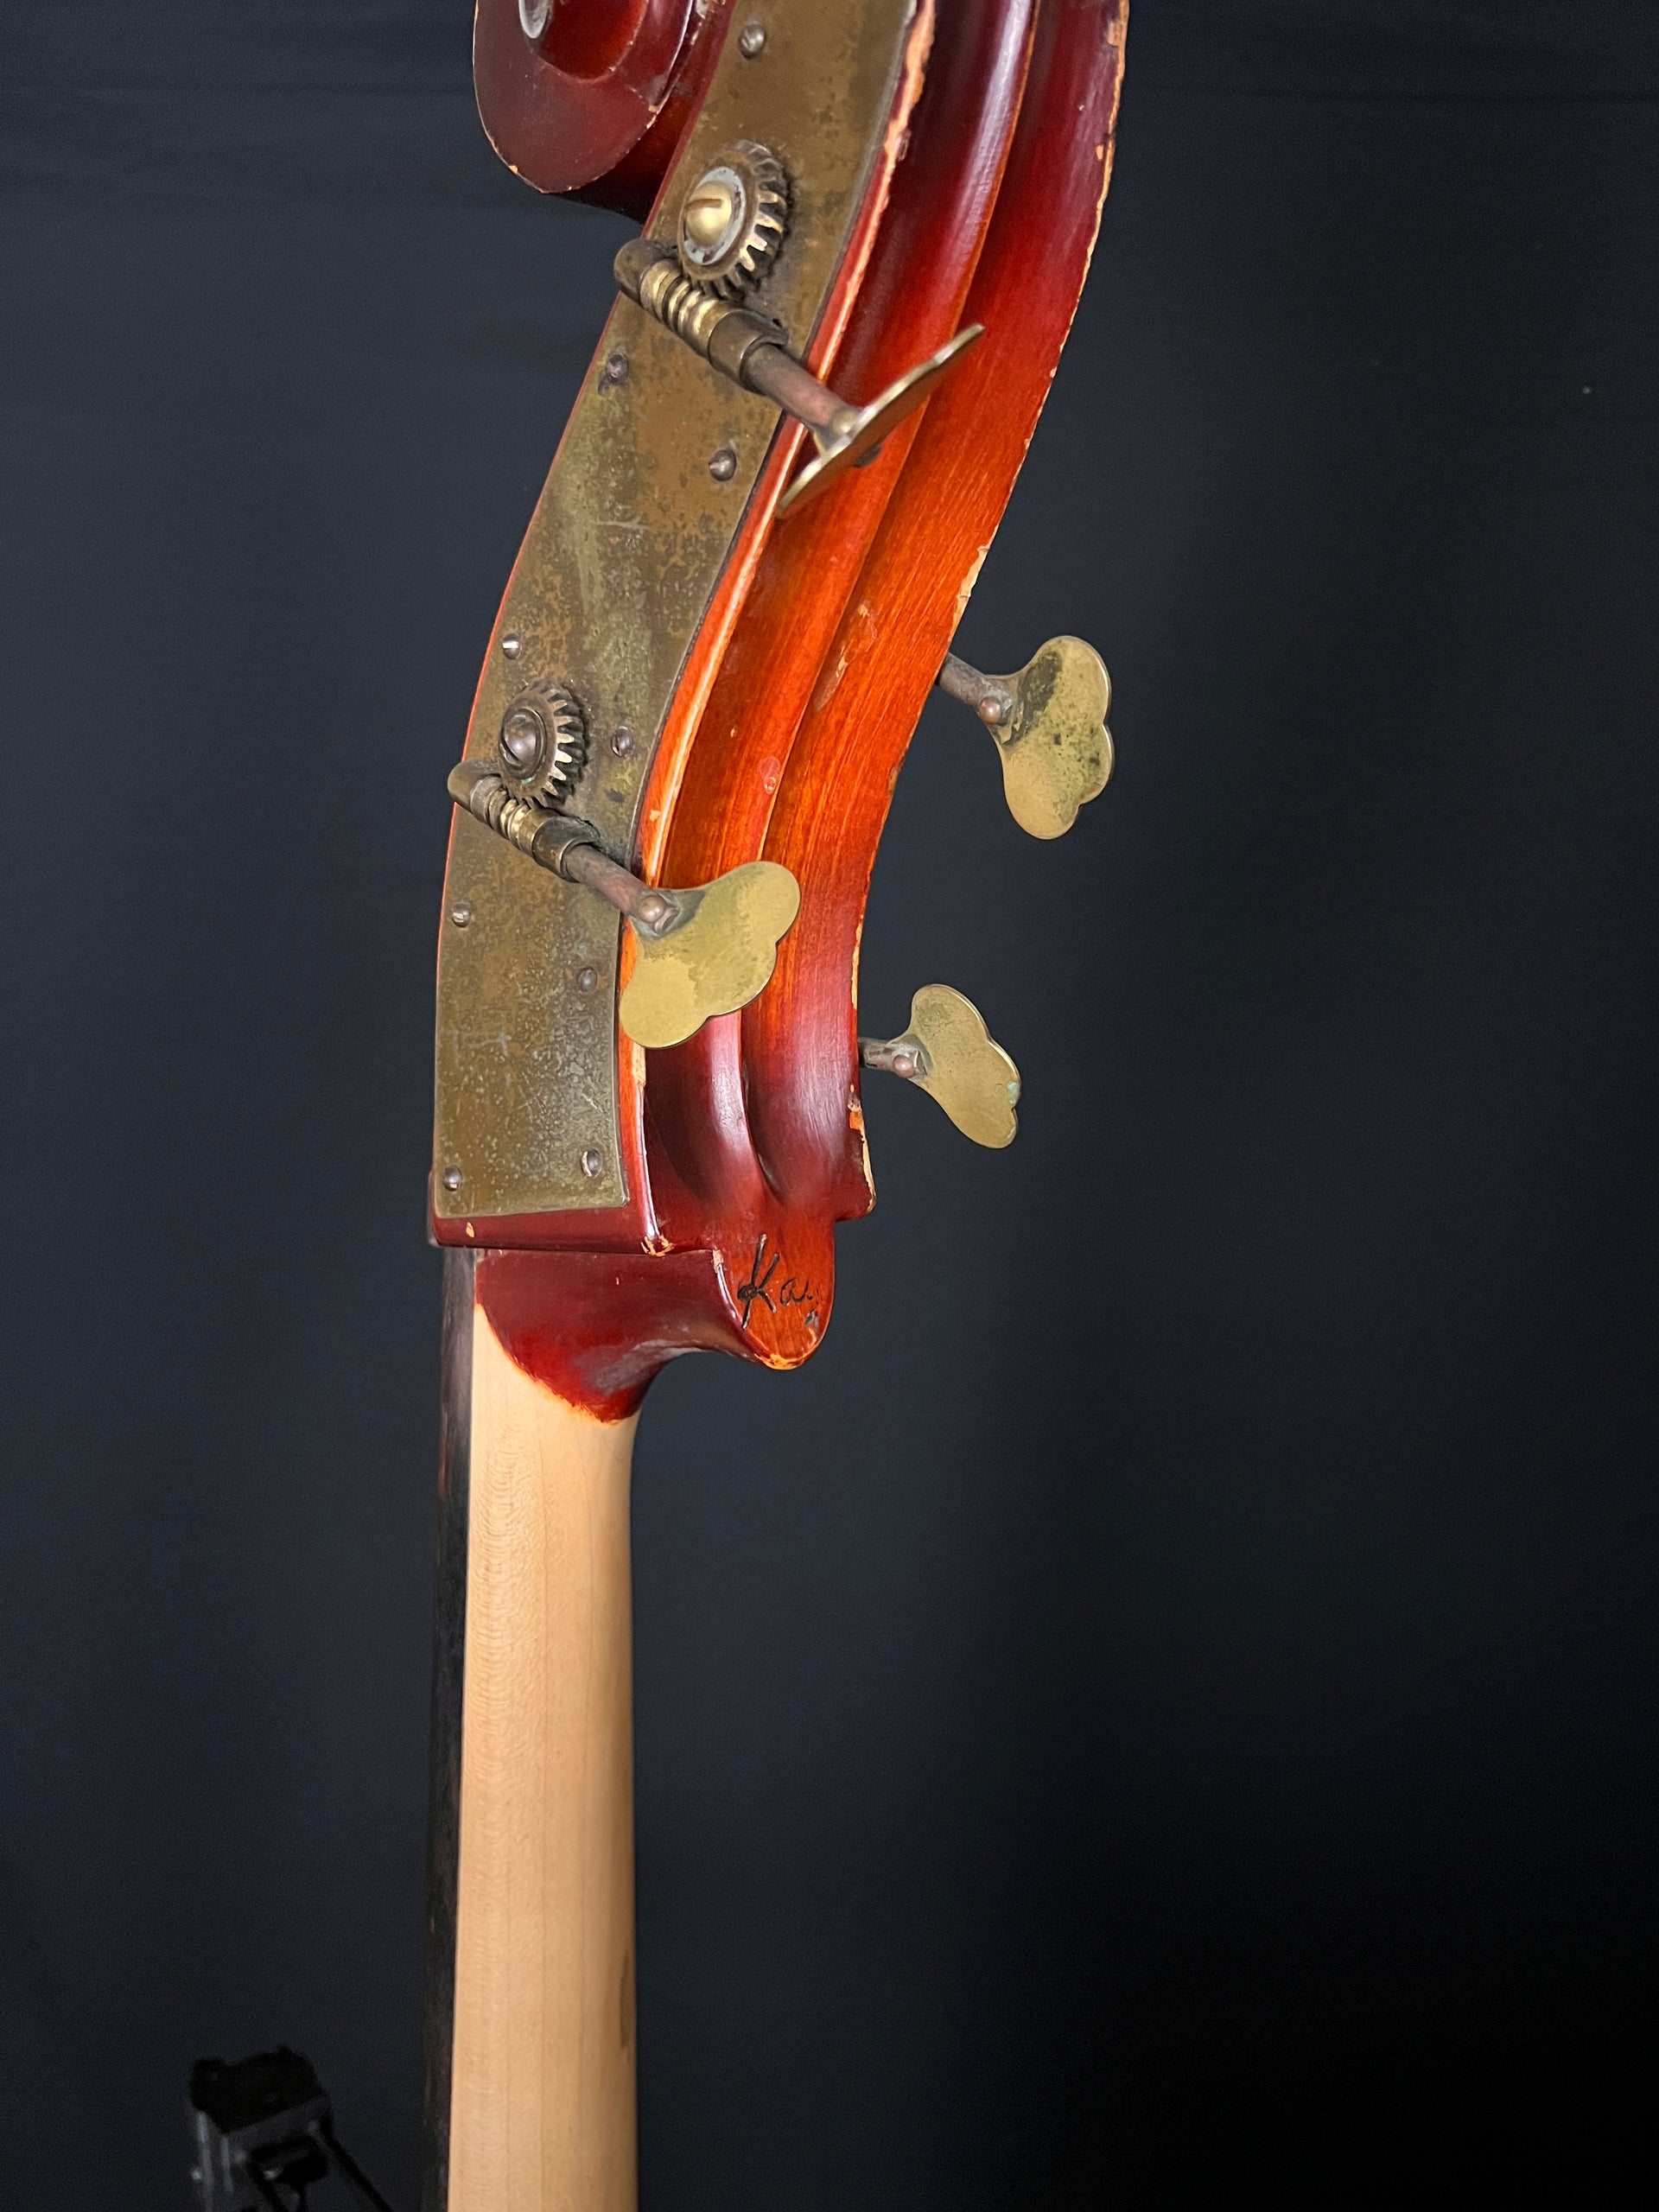 1942 Kay M-1 Upright Bass